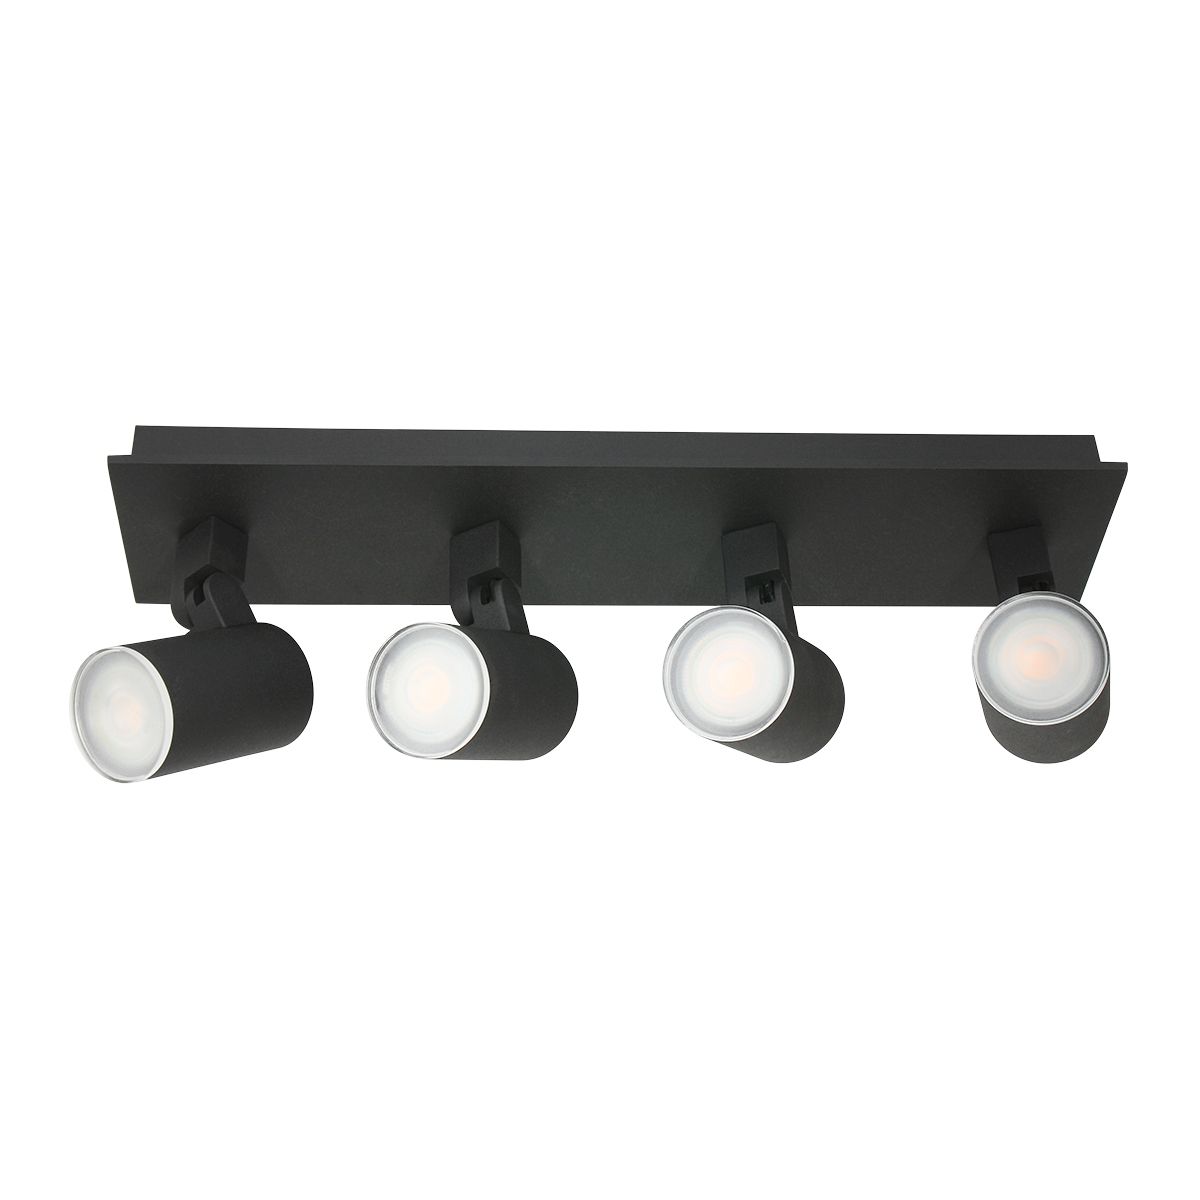 Noir - Spotlampe i sort metal, vælg mellem 4 størrelser 4 skærme